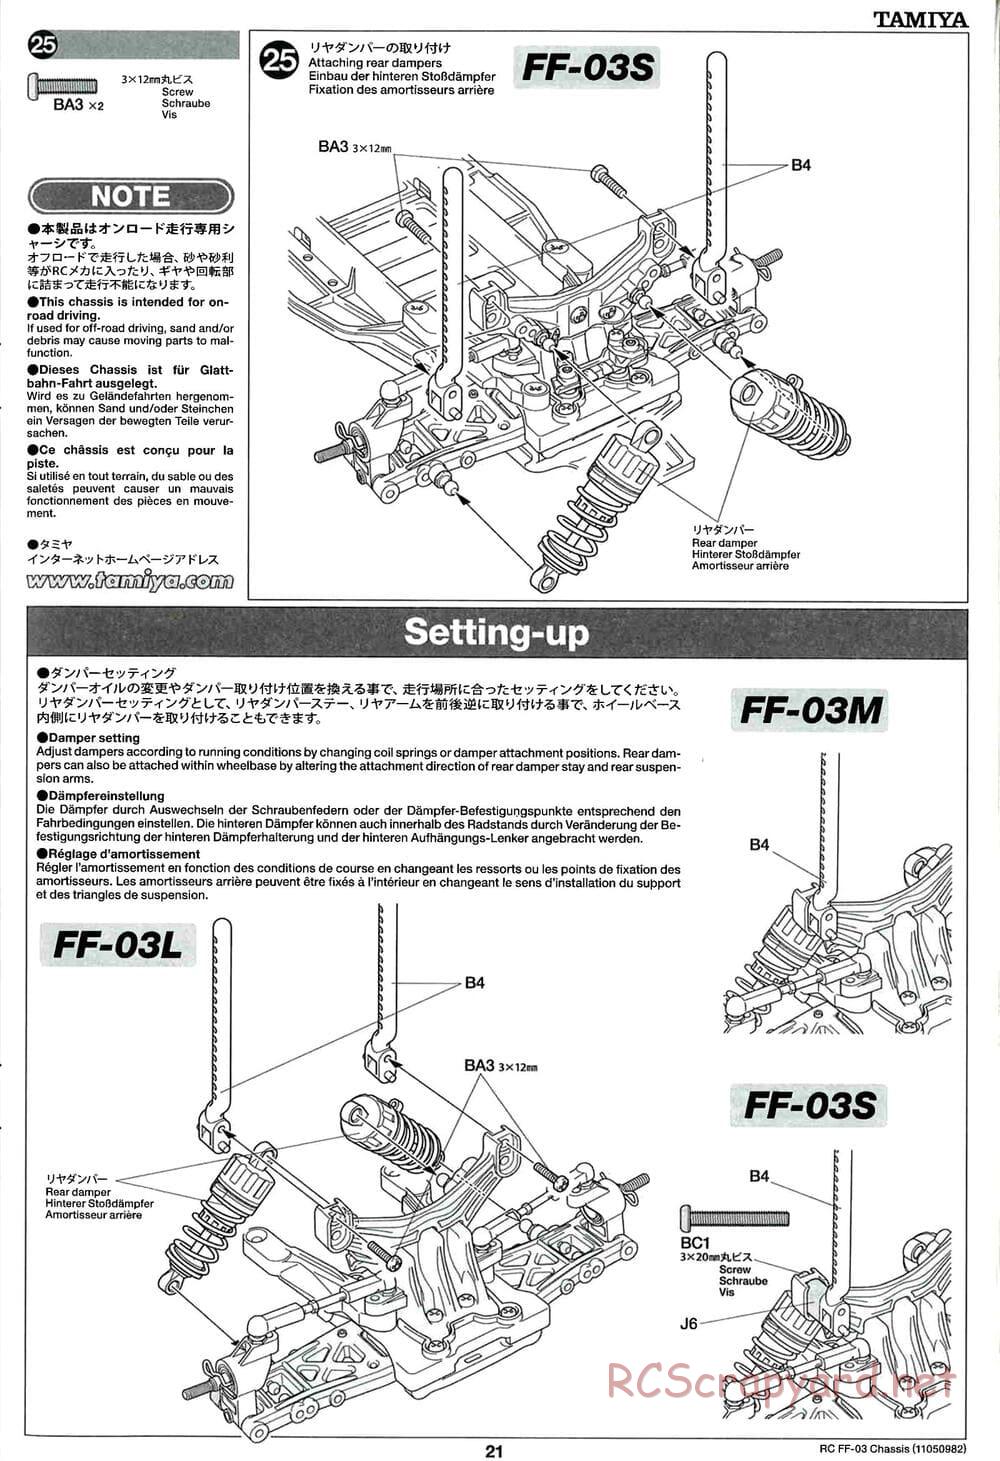 Tamiya - Castrol Honda Civic VTi - FF-03 Chassis - Manual - Page 21